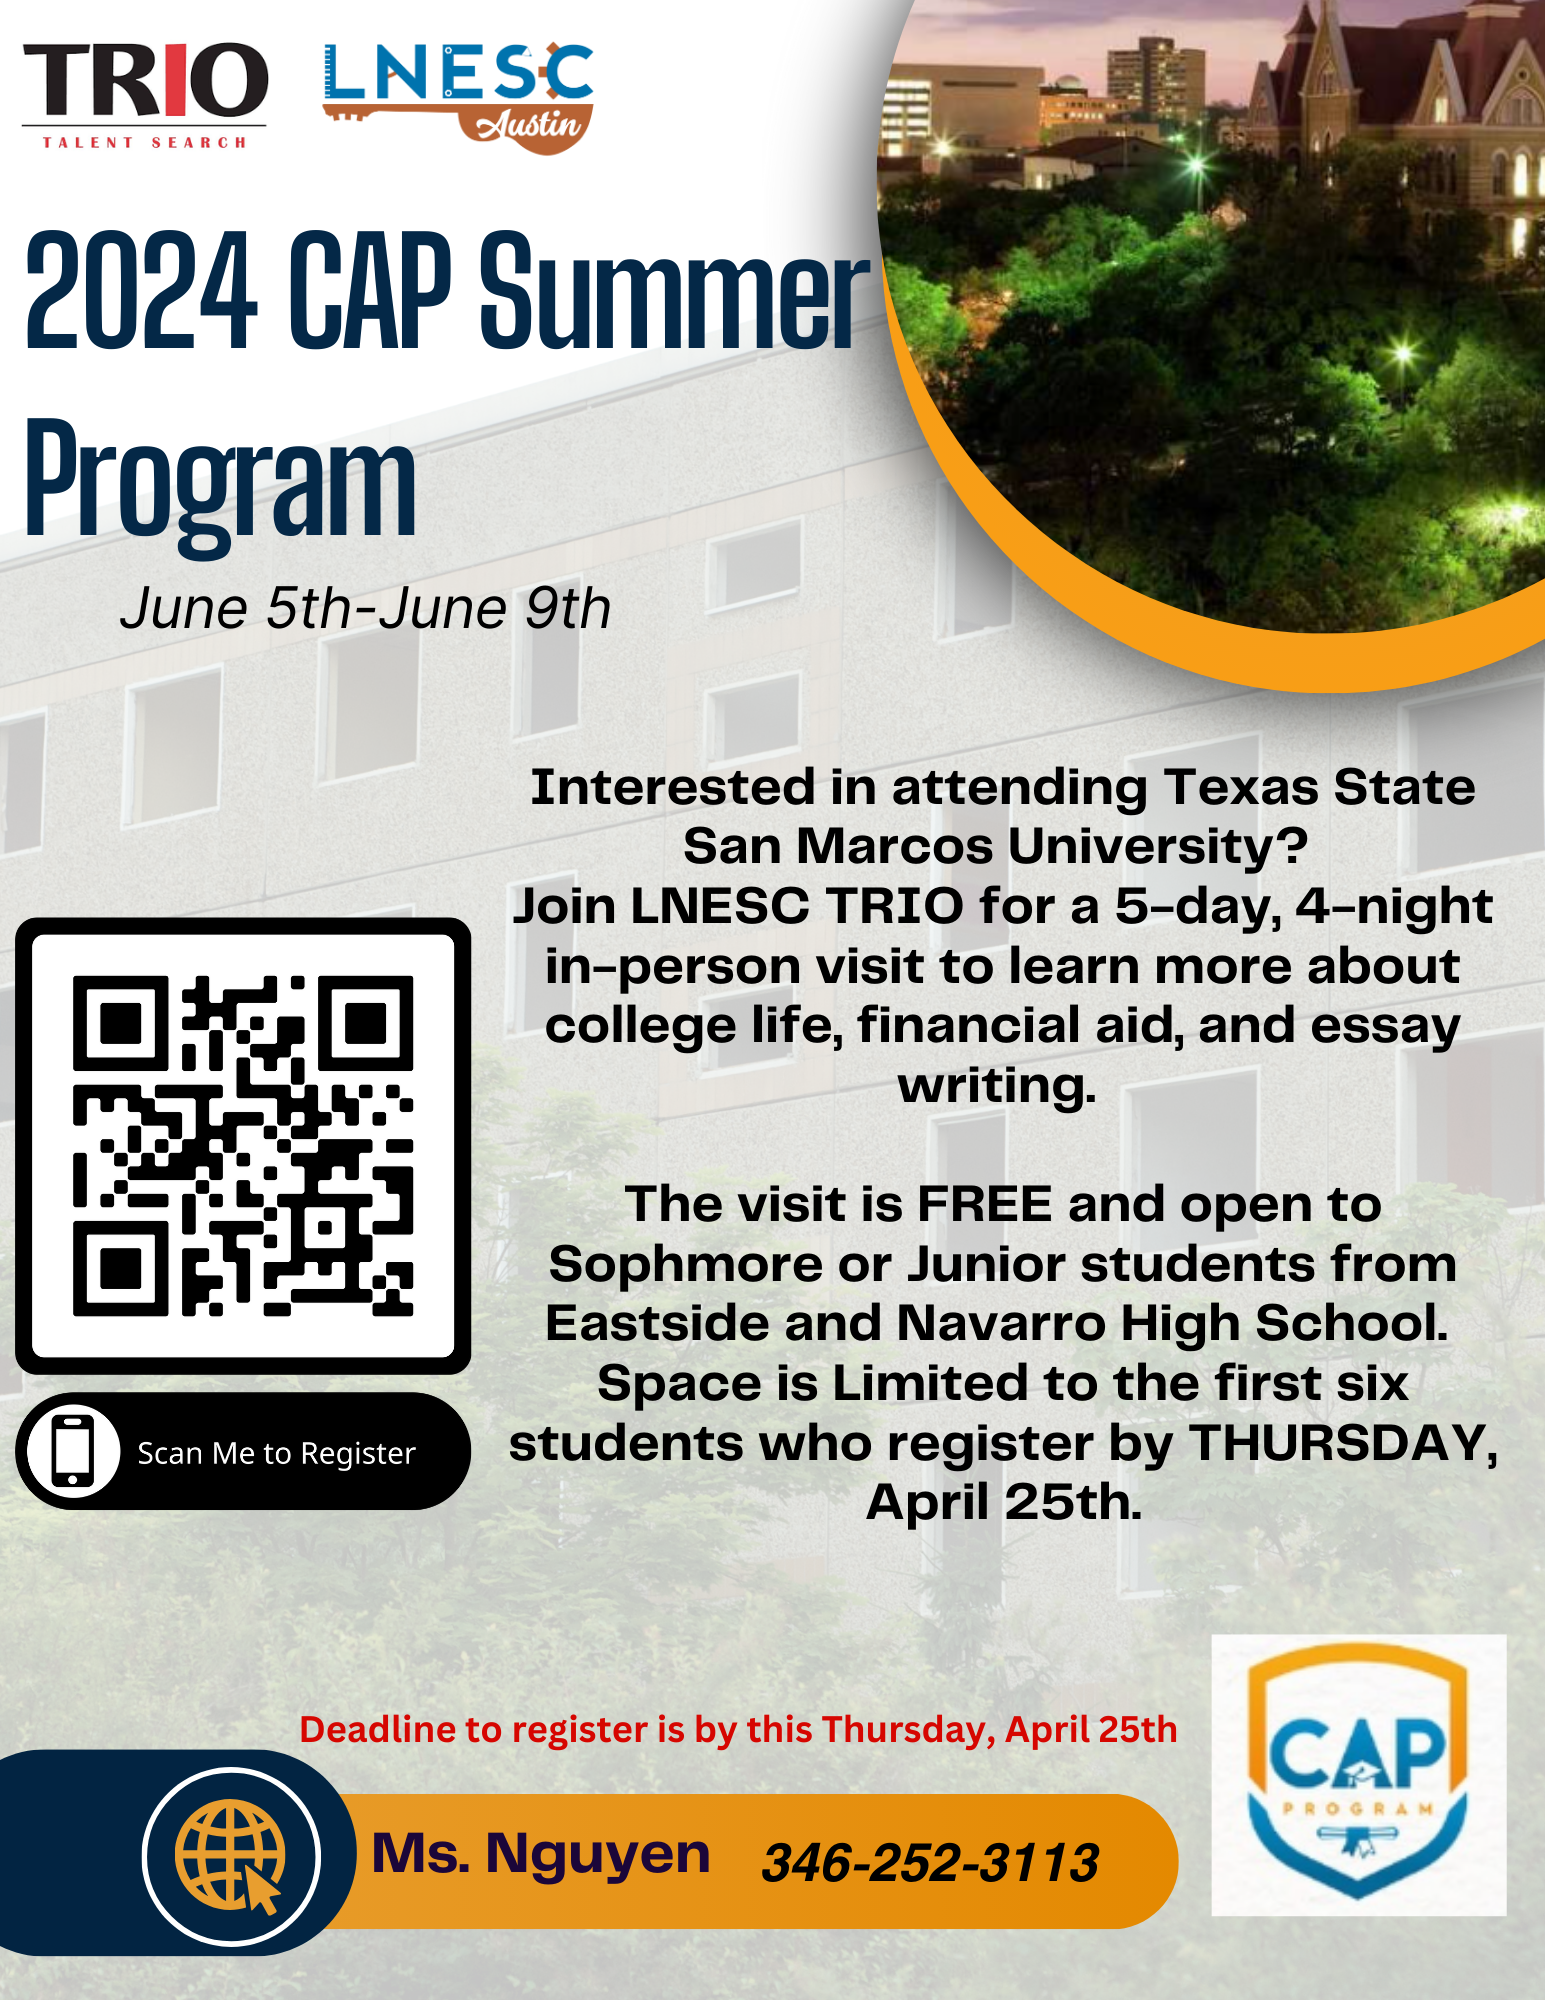 Copy of TXST CAP Program Flyer